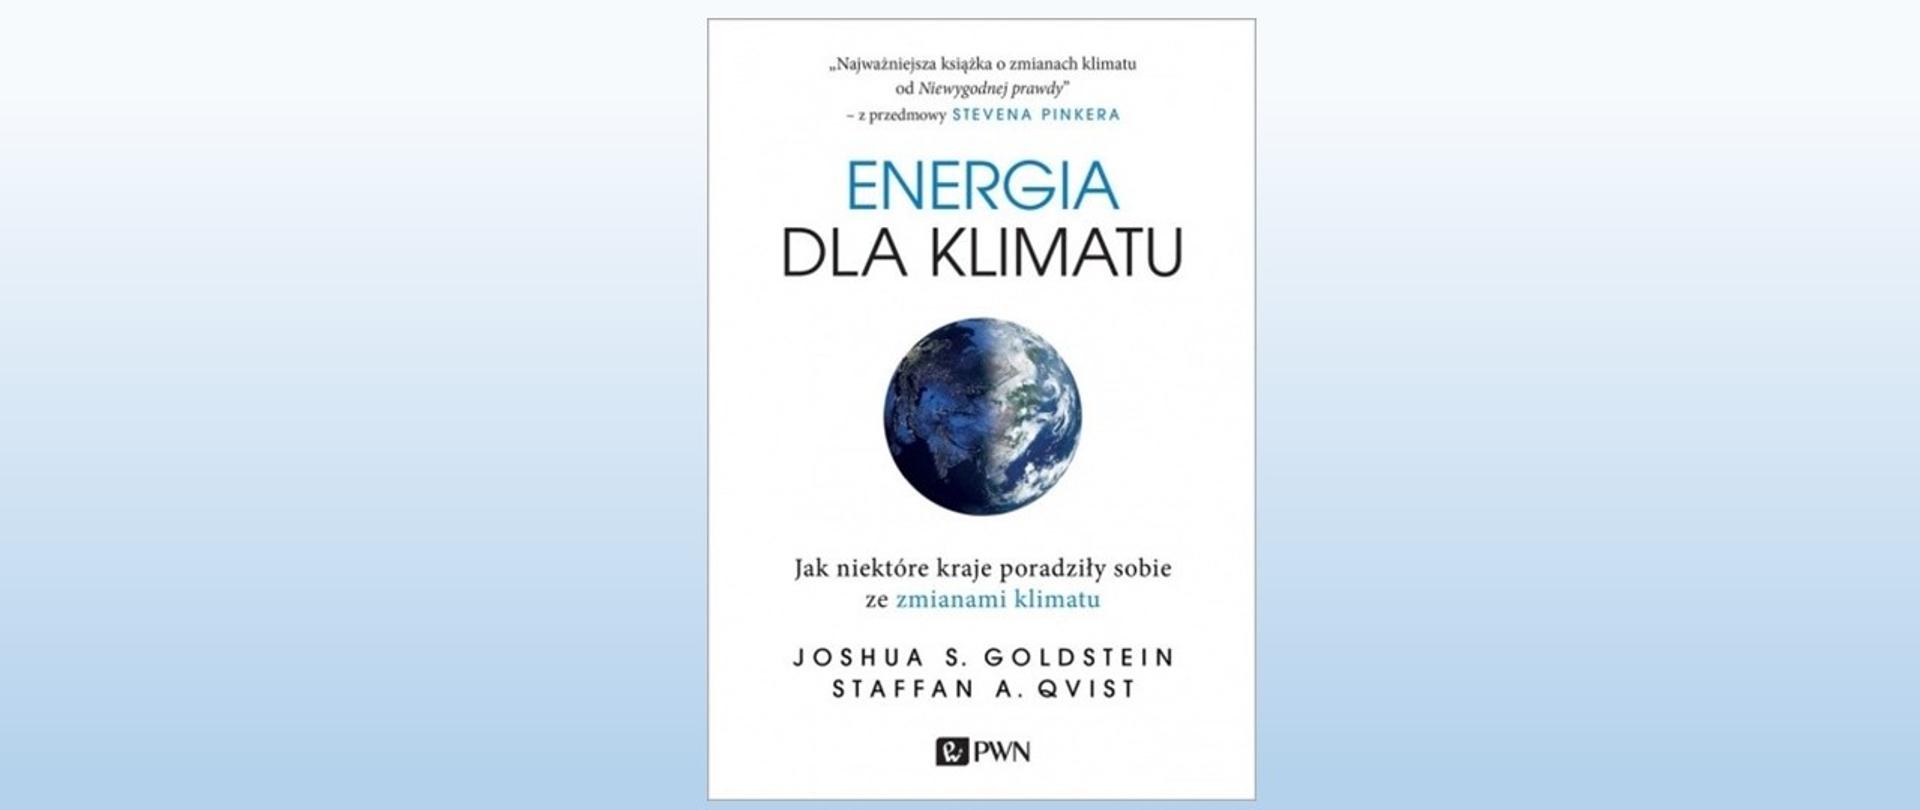 Okładka książki Energia dla klimatu, tytuł oraz zdjęcie kuli ziemskiej 